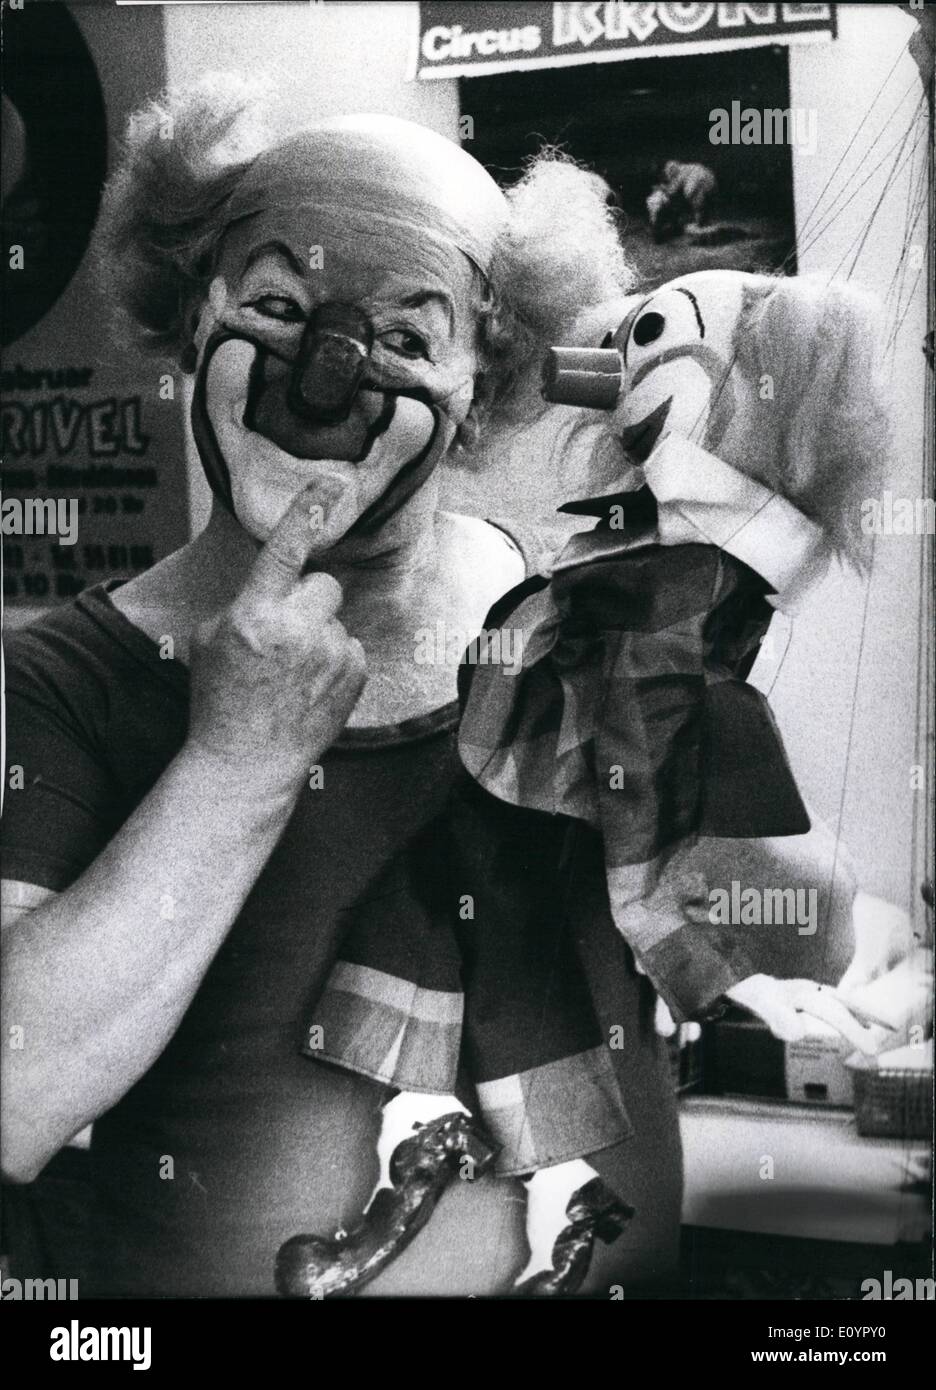 Mar. 03, 1971 - la performance de Charlie Rivel à Munich sera terminé : Charlie Rivel a à dire au revoir à Munich (Allemagne). Son premier rôle dans la couronne de cirque qui est un immense succès pour lui sera terminé. Le célèbre clown ira à un sanatorium au sud de l'Allemagne de laisser traiter ses rhumatismes. Entre autres, il sera accompagné de cette petite image, d'une marionnette Charlie Rivel, qui a été faite par l'artiste artisan Charlotte Brugel de Munich et lui était donnée comme présente en mémoire de sa performance à Munich (photo) Banque D'Images